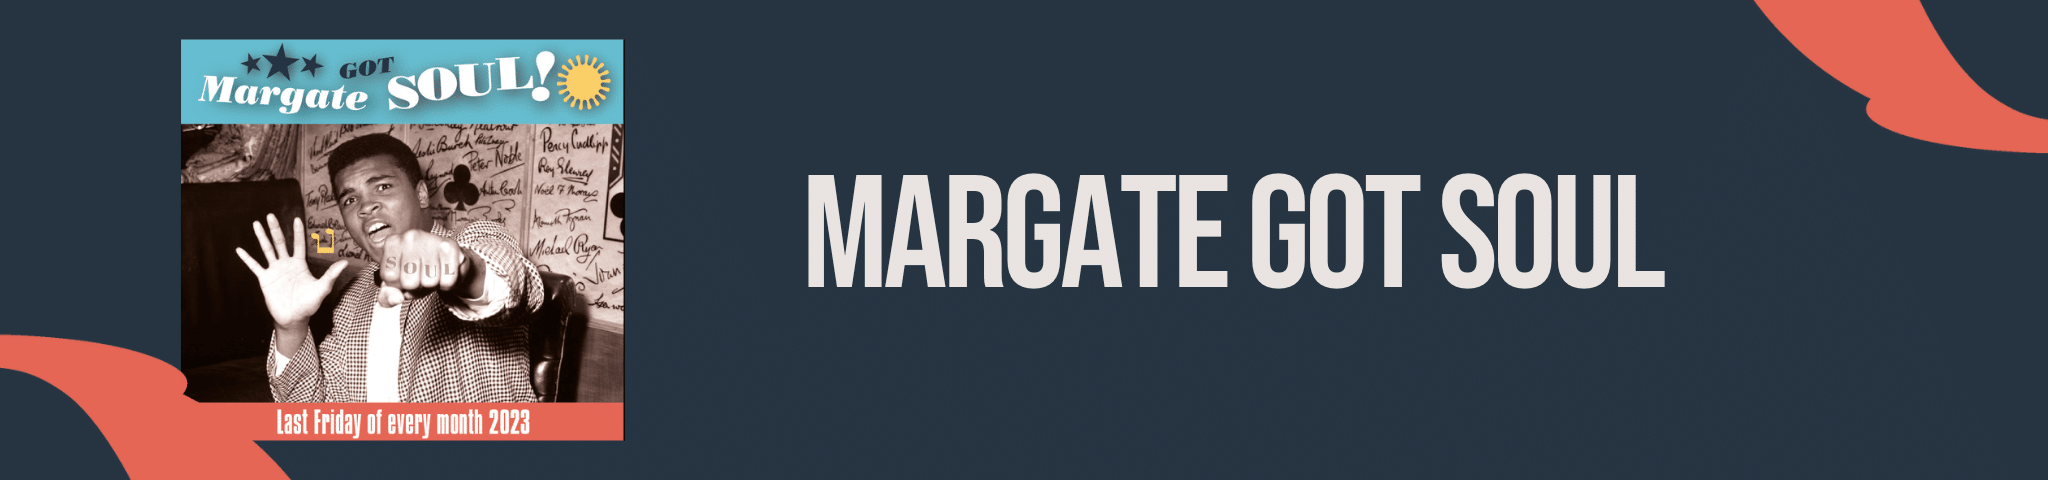 MARGATE GOT SOUL – 27TH OCTOBER 2023